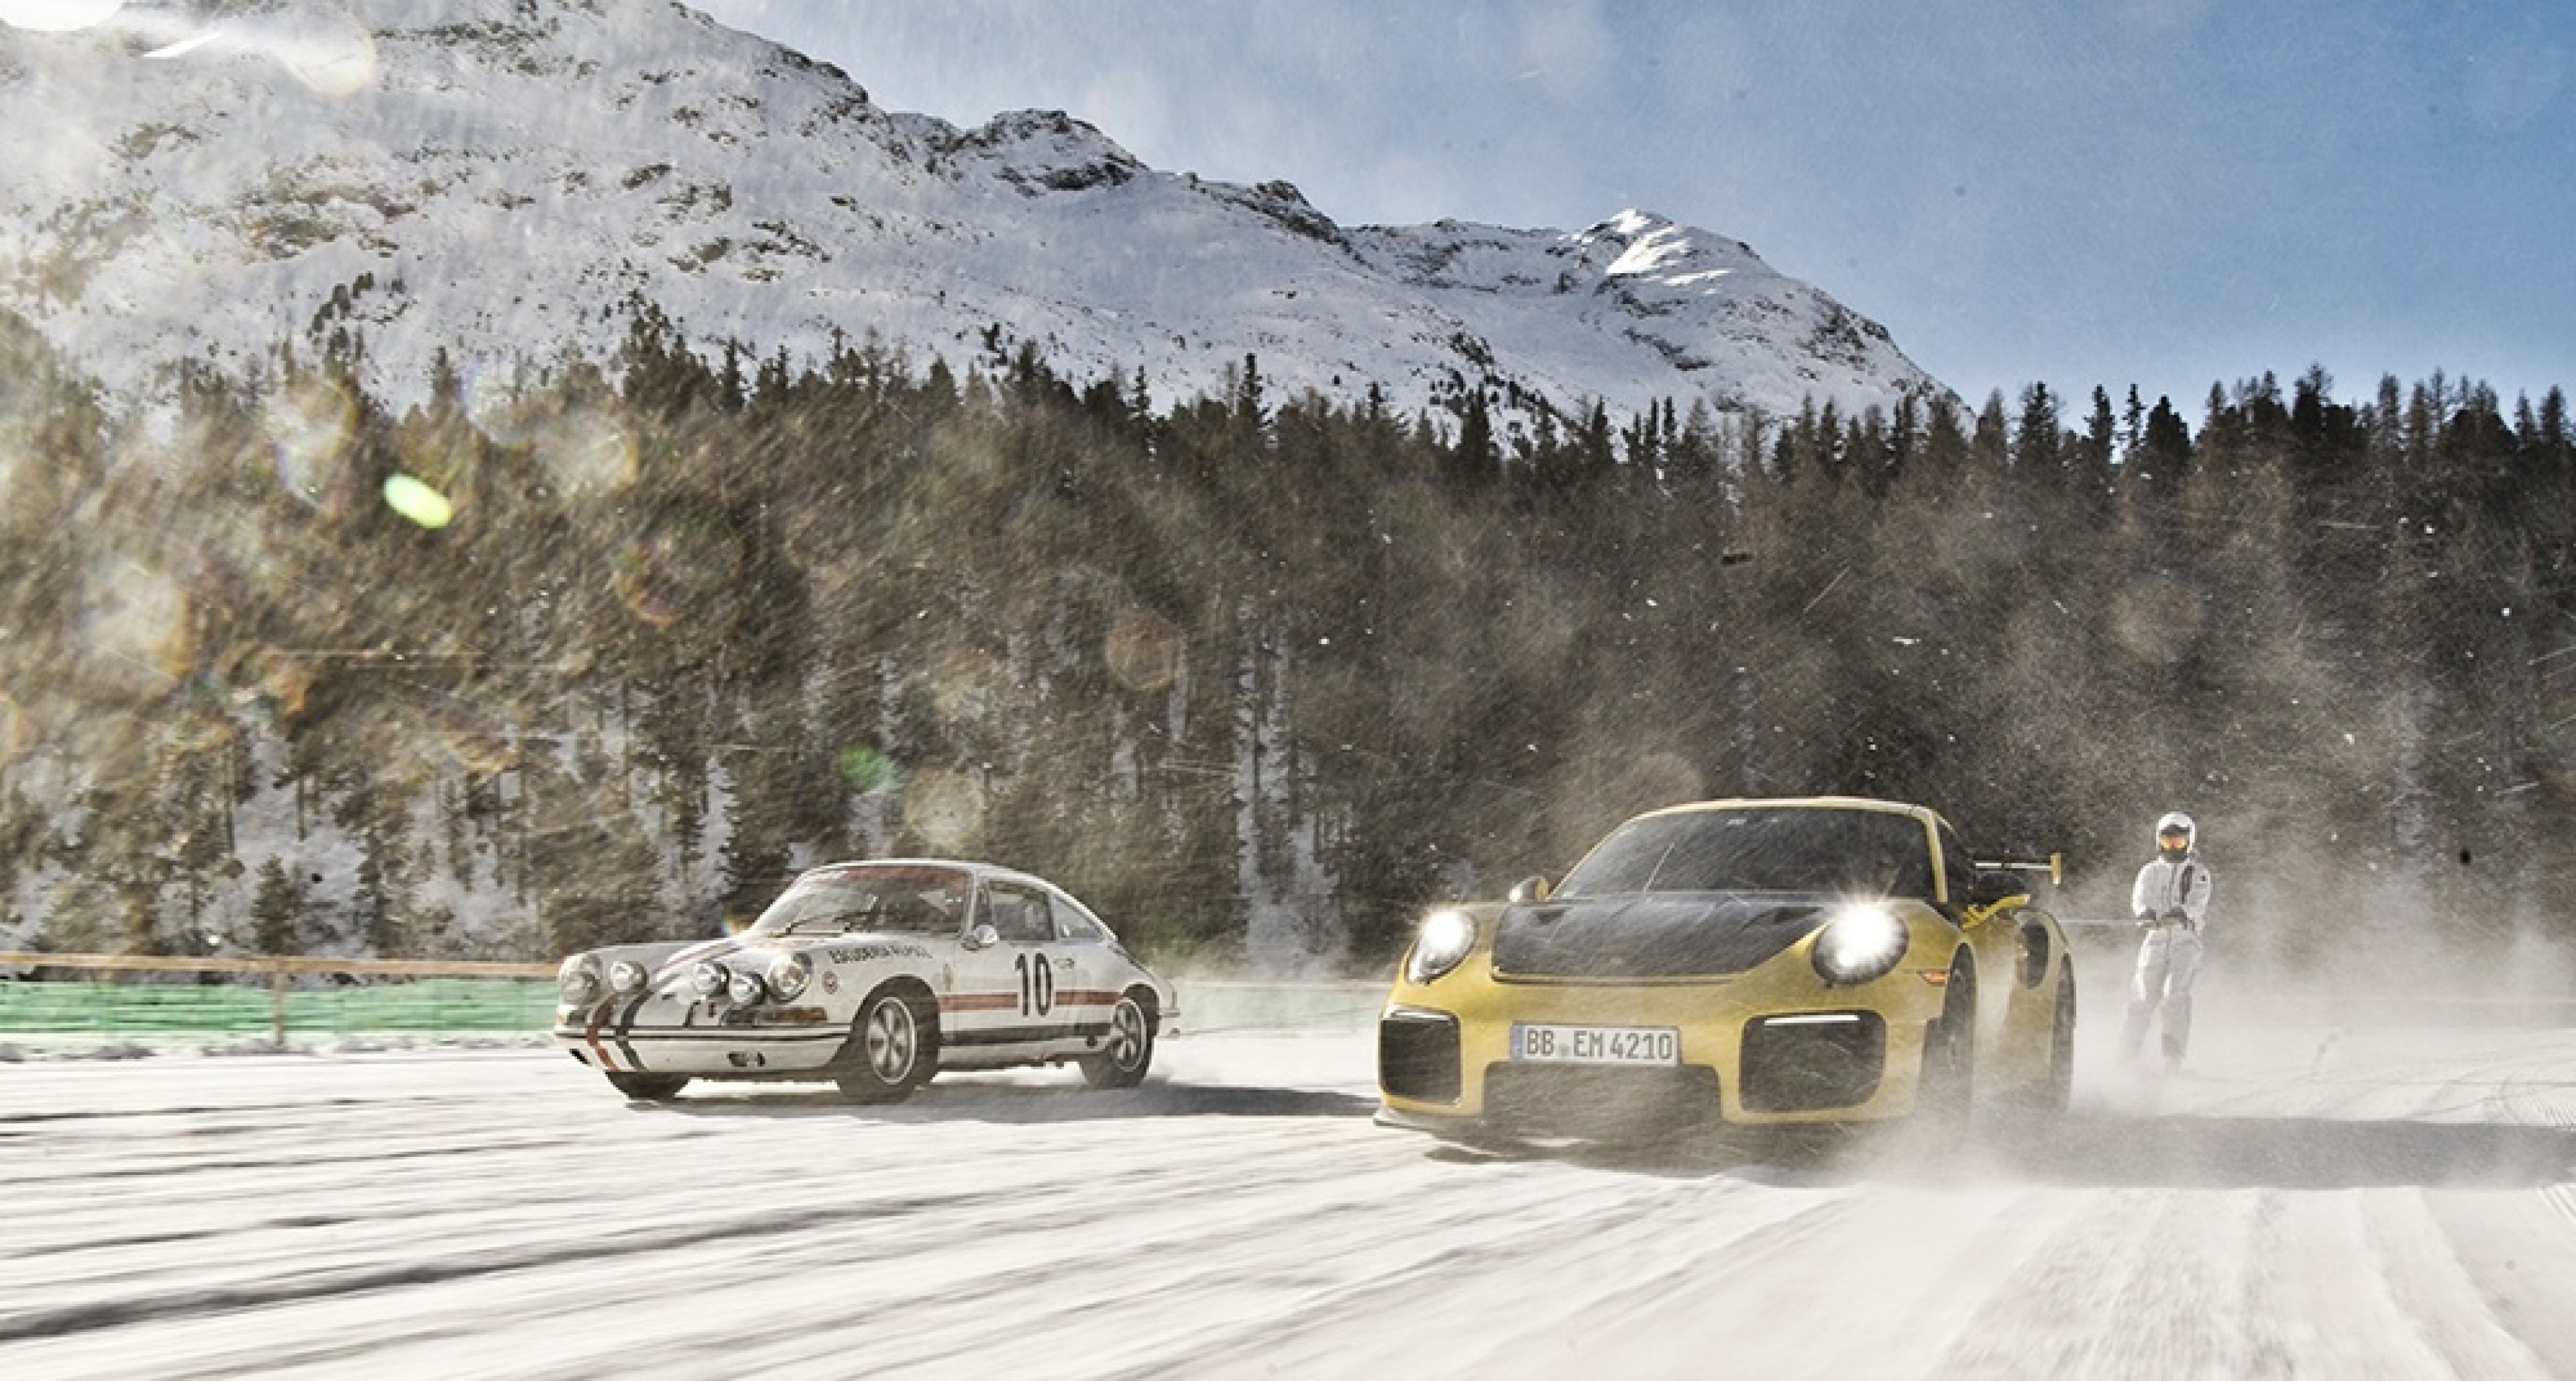 Porsche Snow